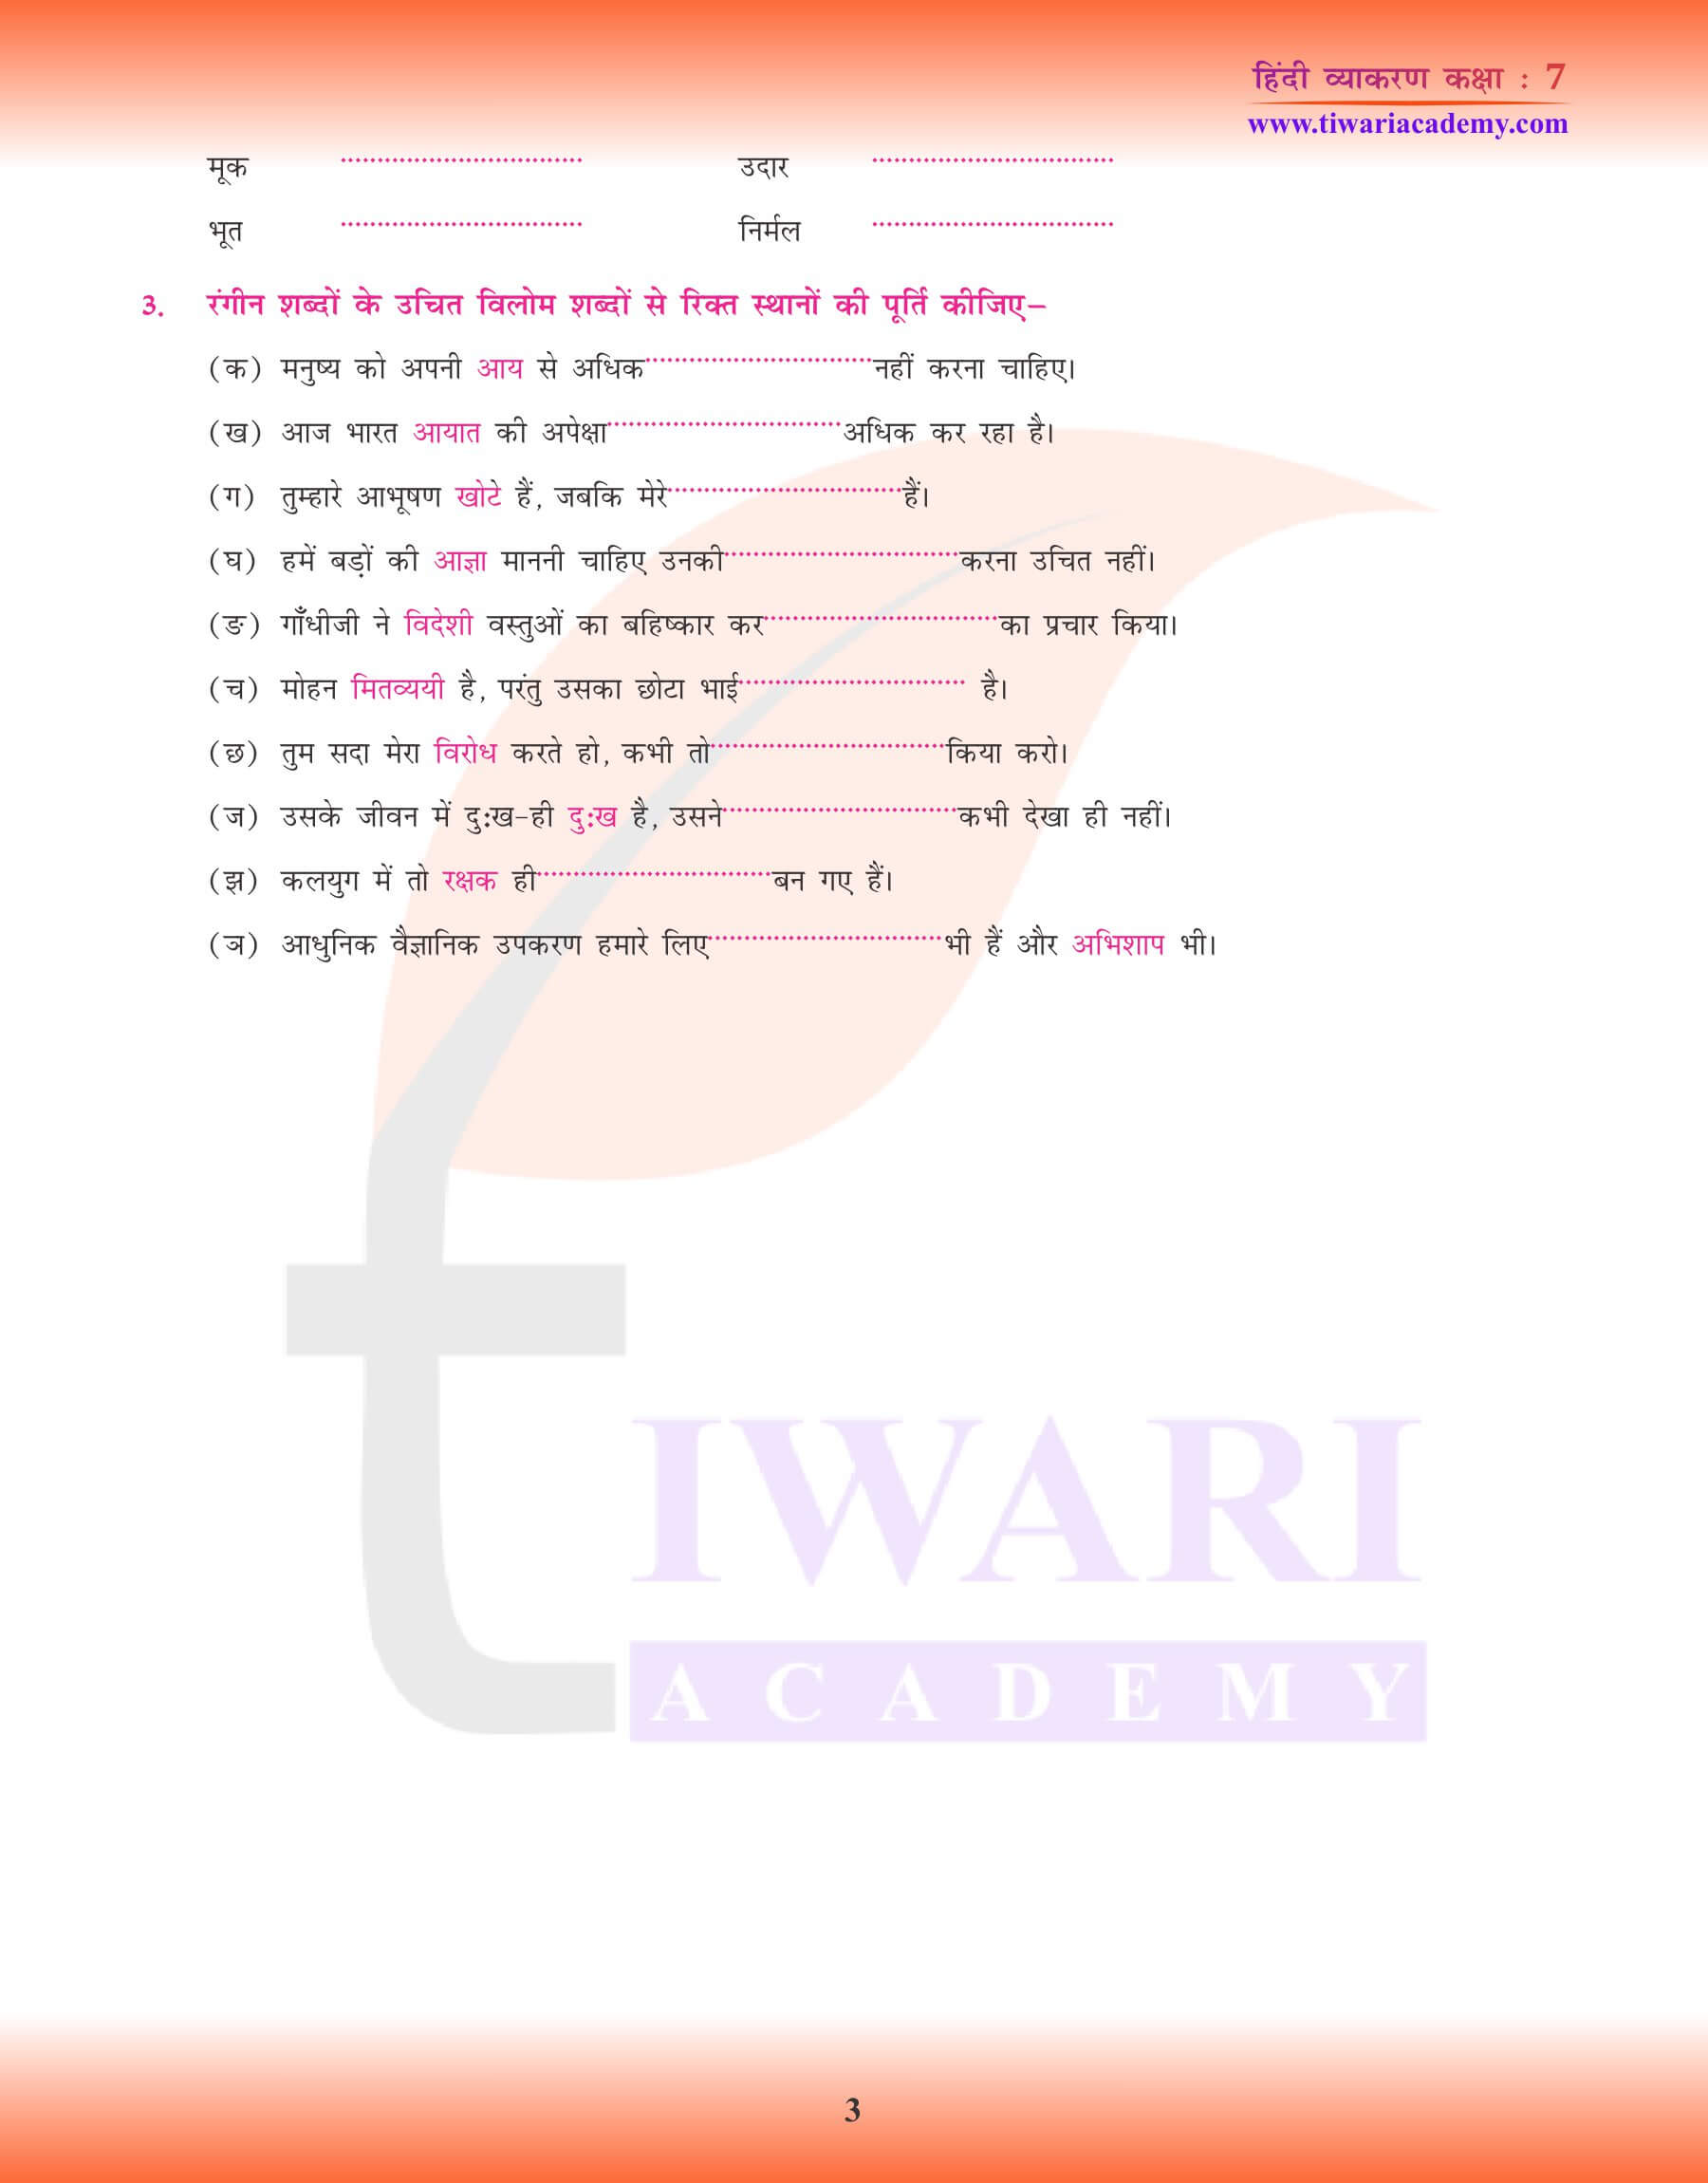 कक्षा 7 हिंदी व्याकरण में विलोम शब्द